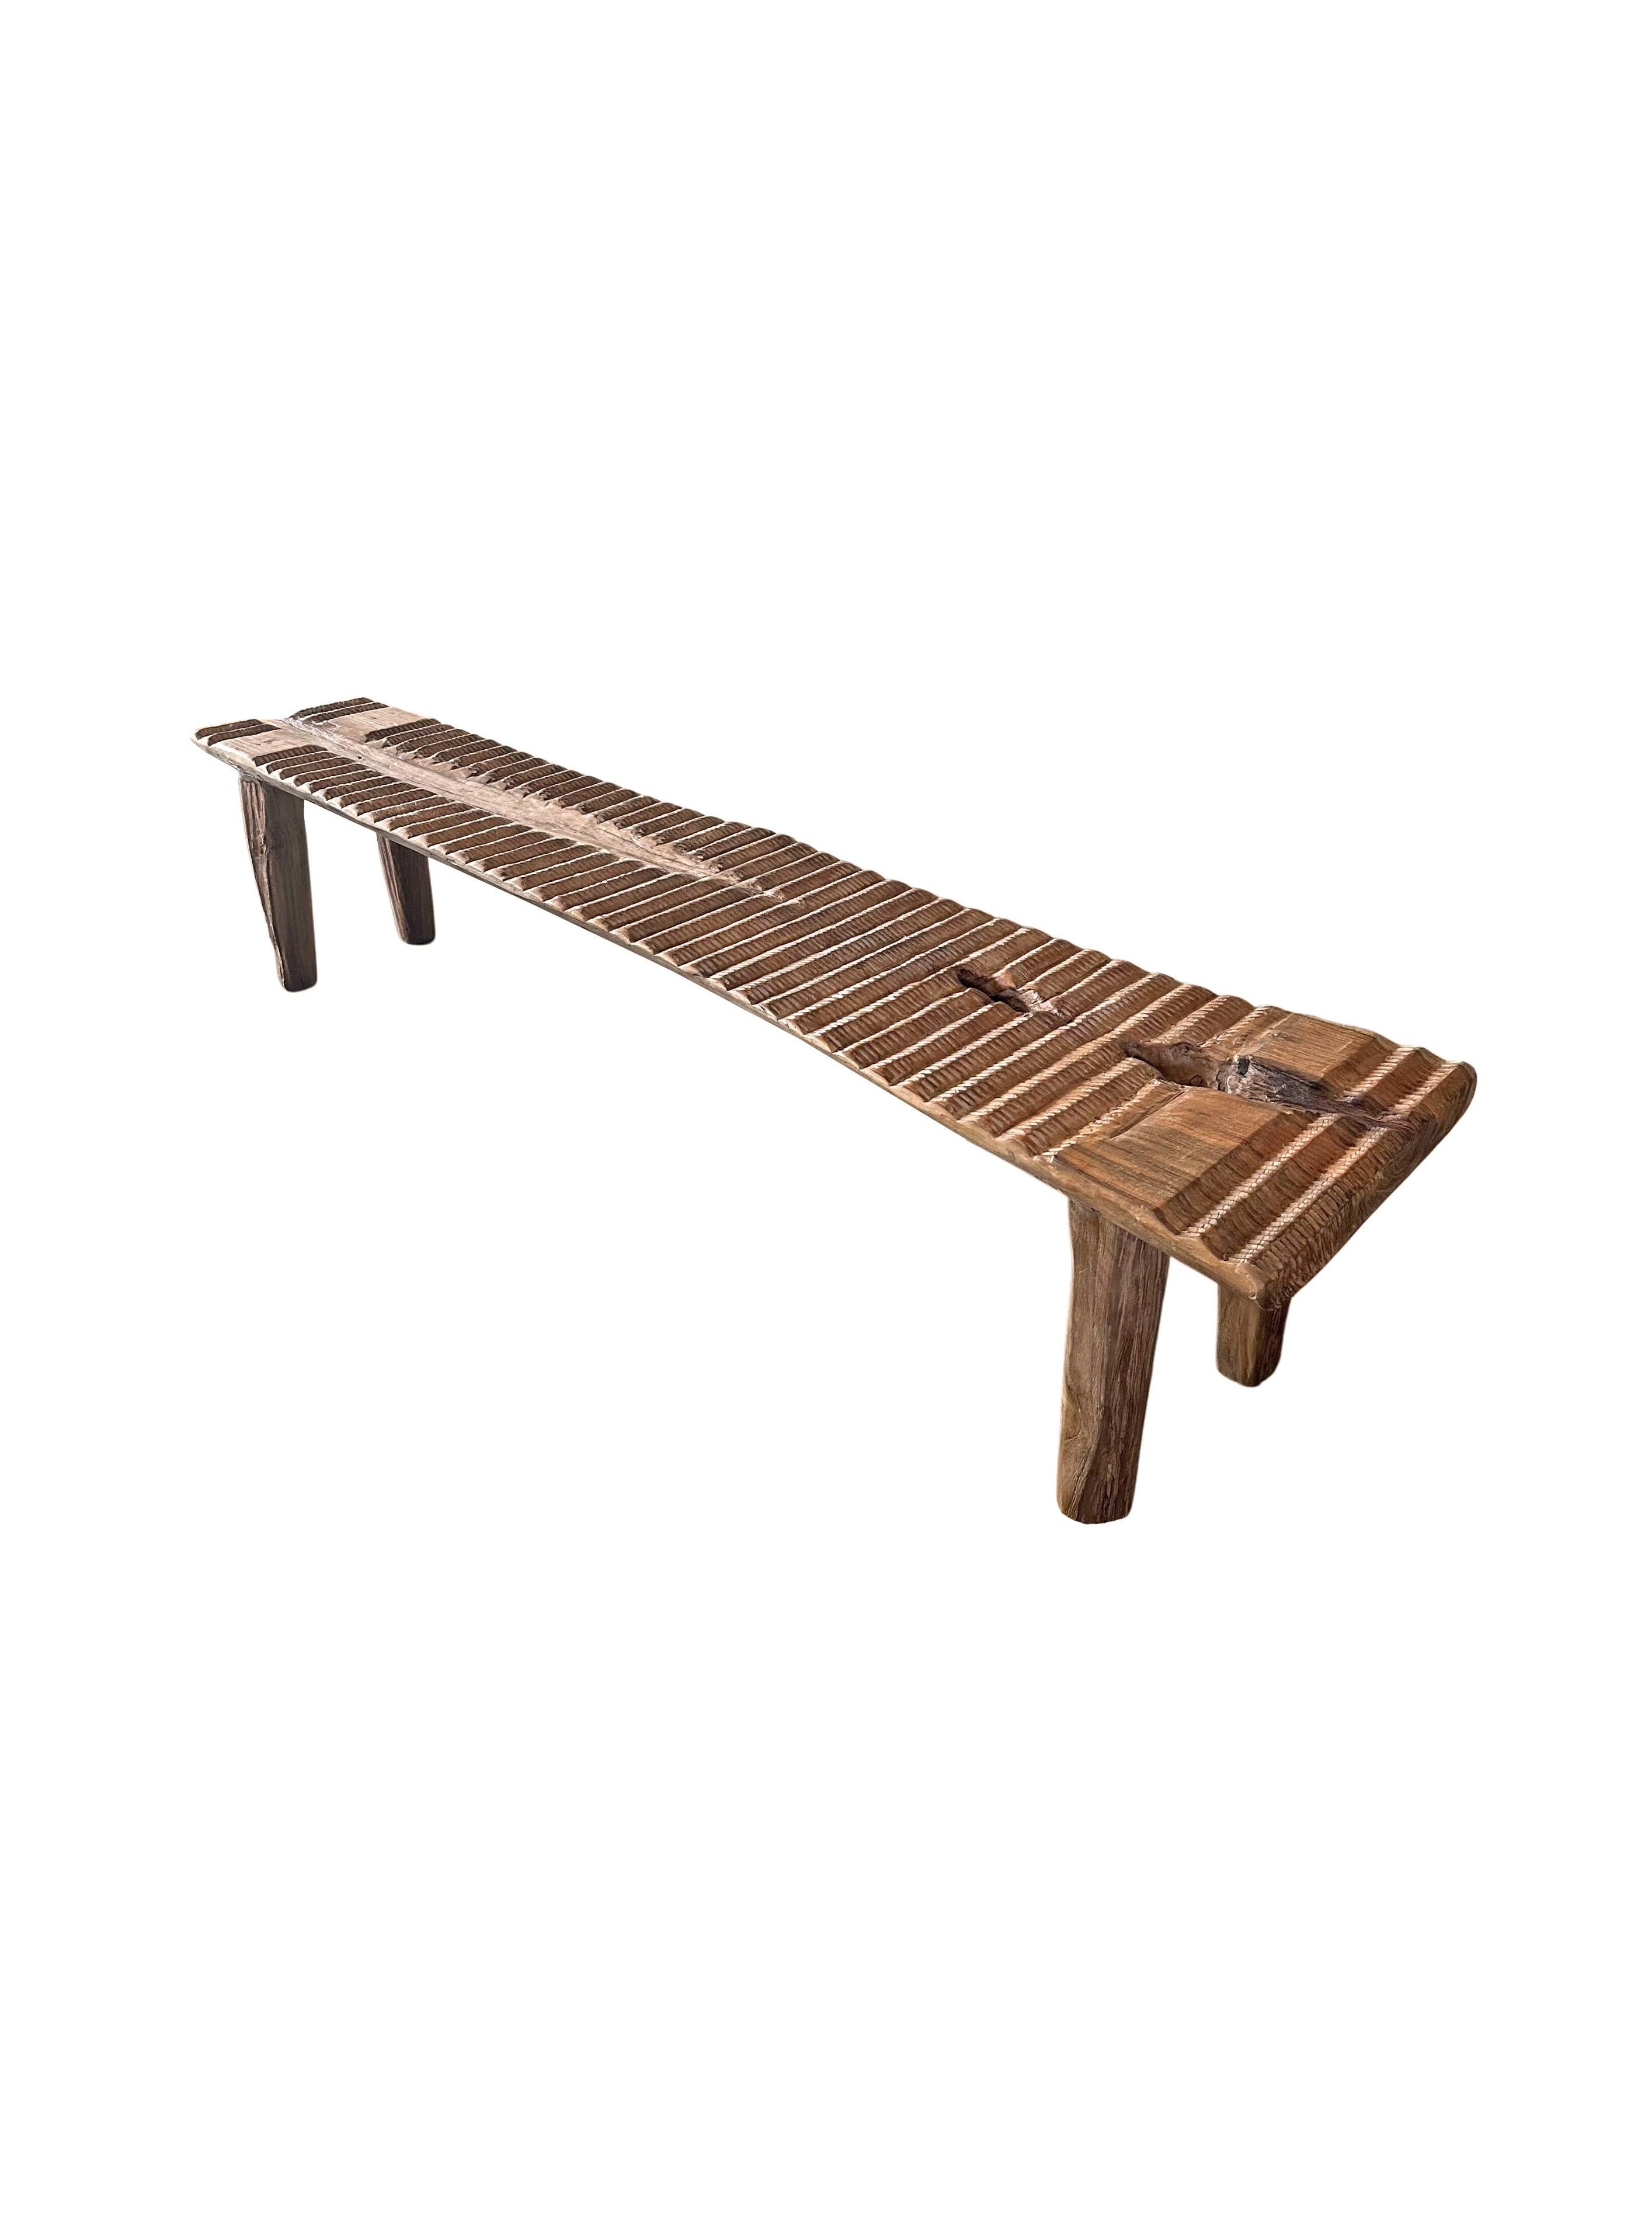 Teak Wood Sculptural Long Bench, Carved Detailing, Modern Organic For Sale 4